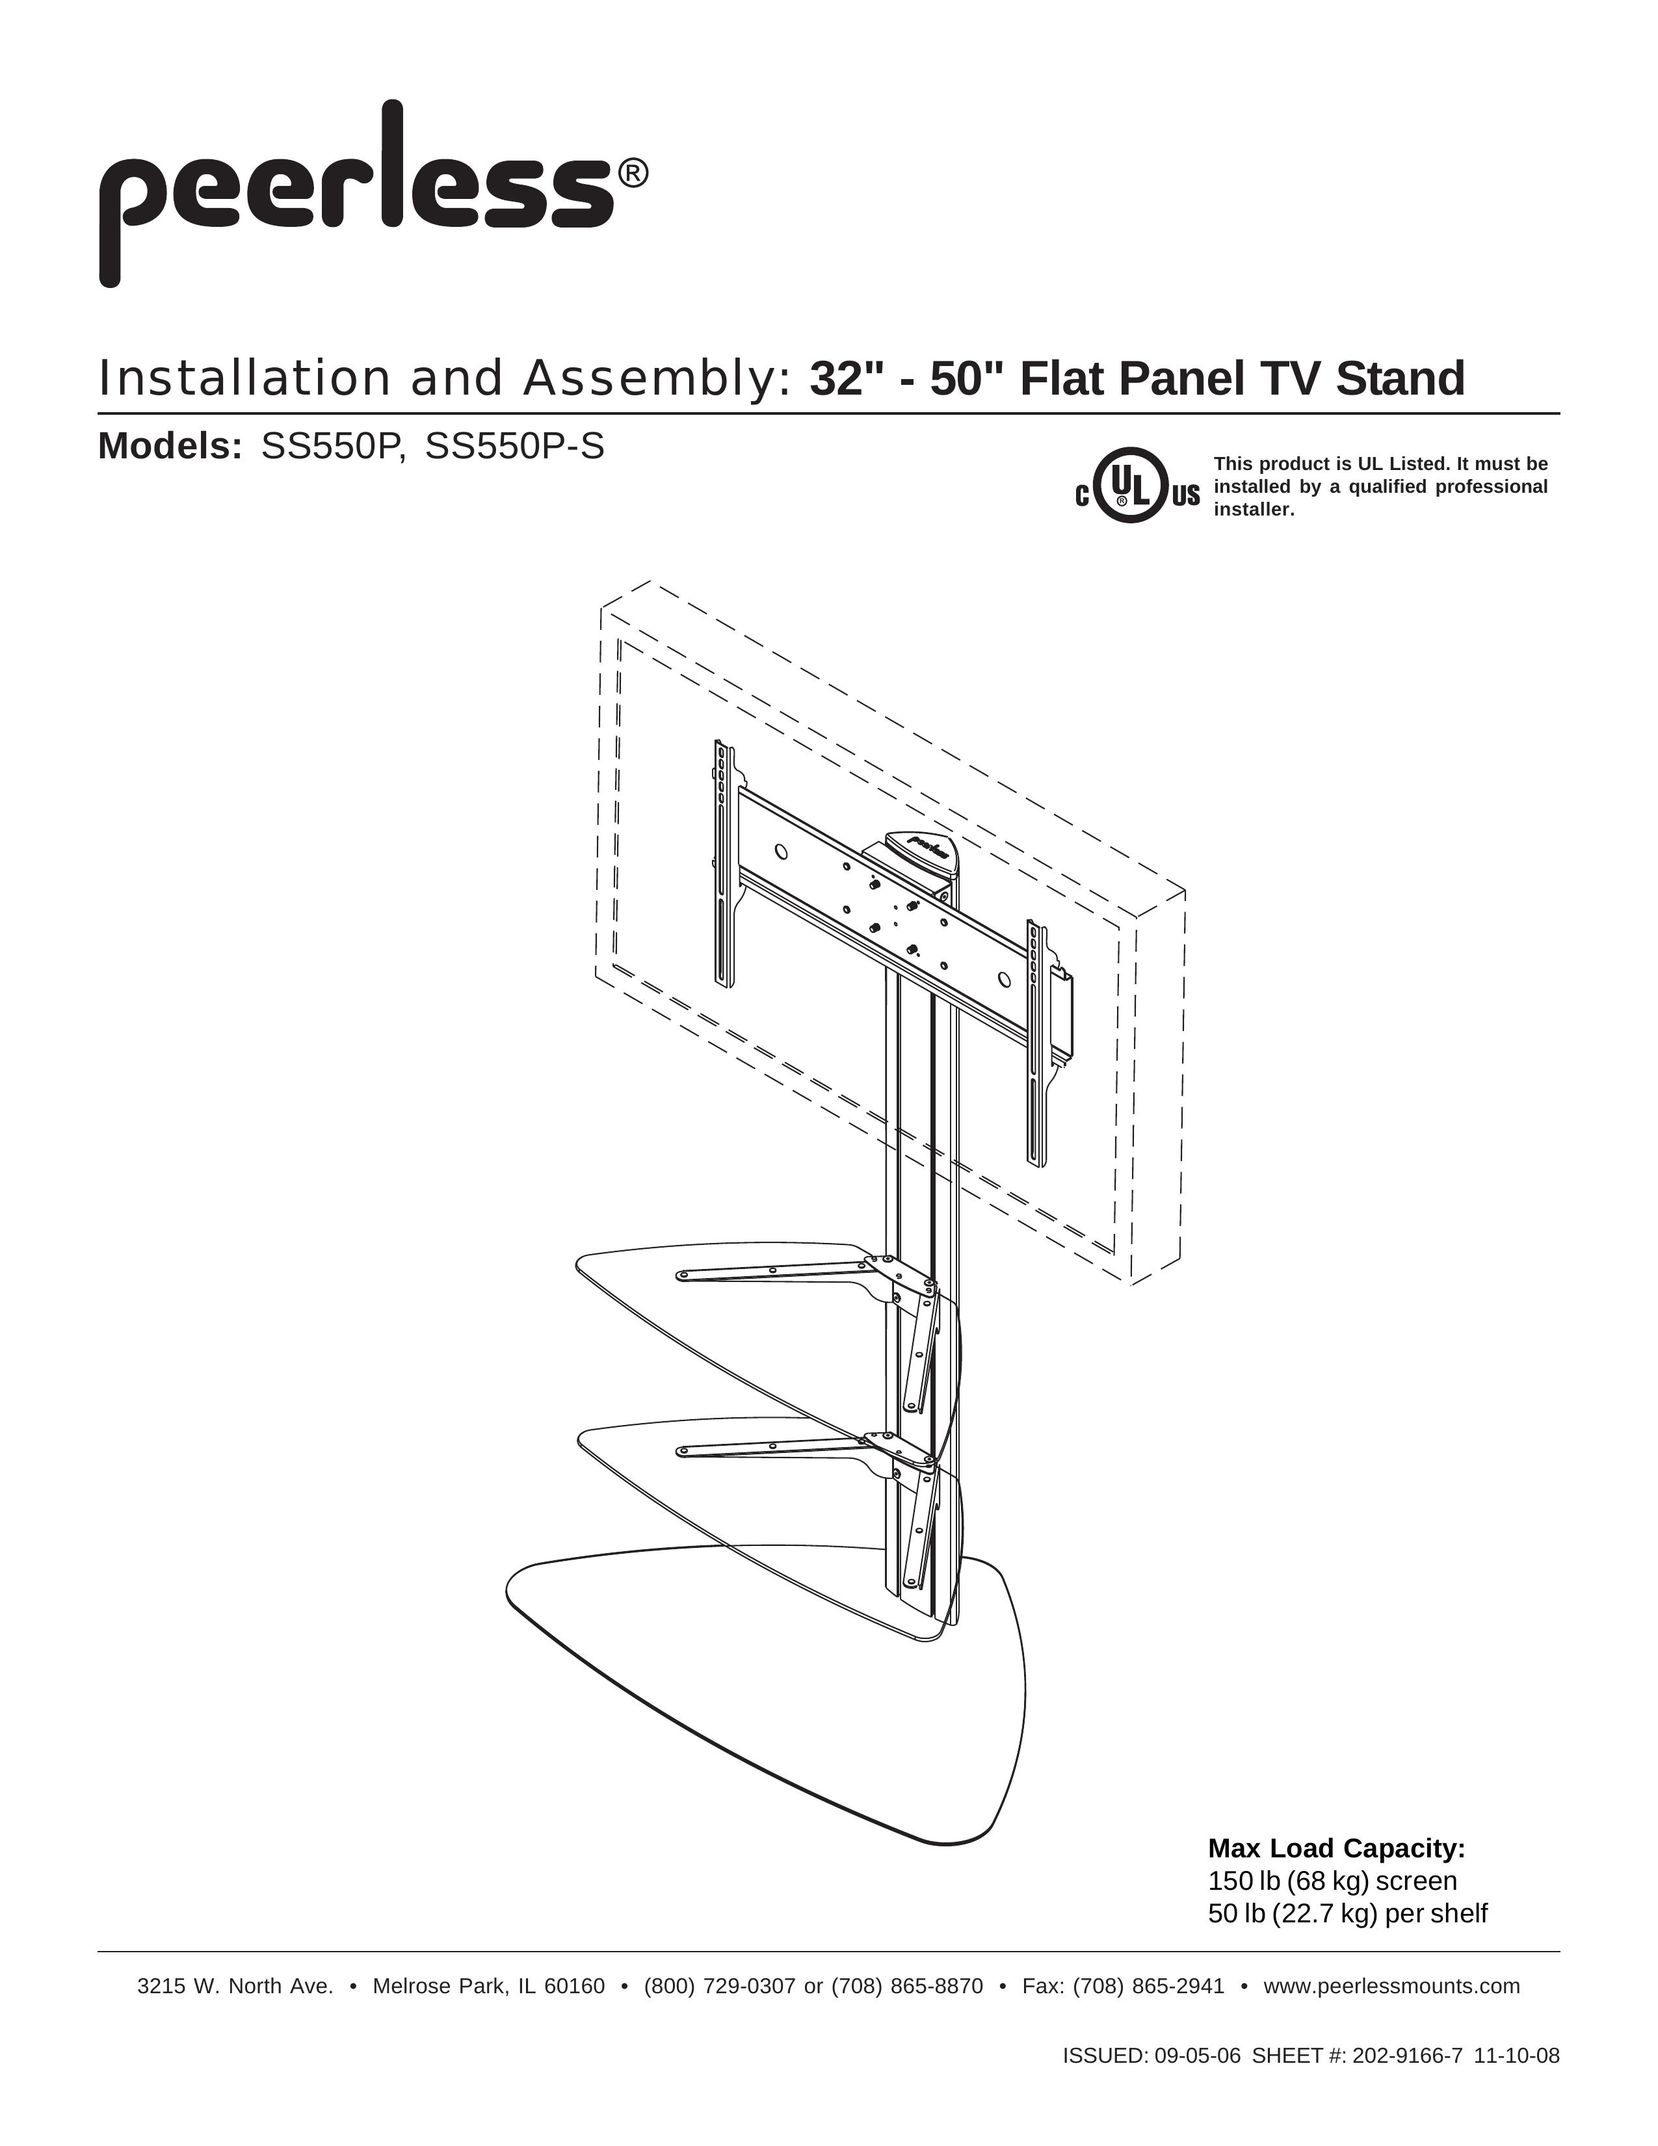 Peerless Industries SS550P Indoor Furnishings User Manual